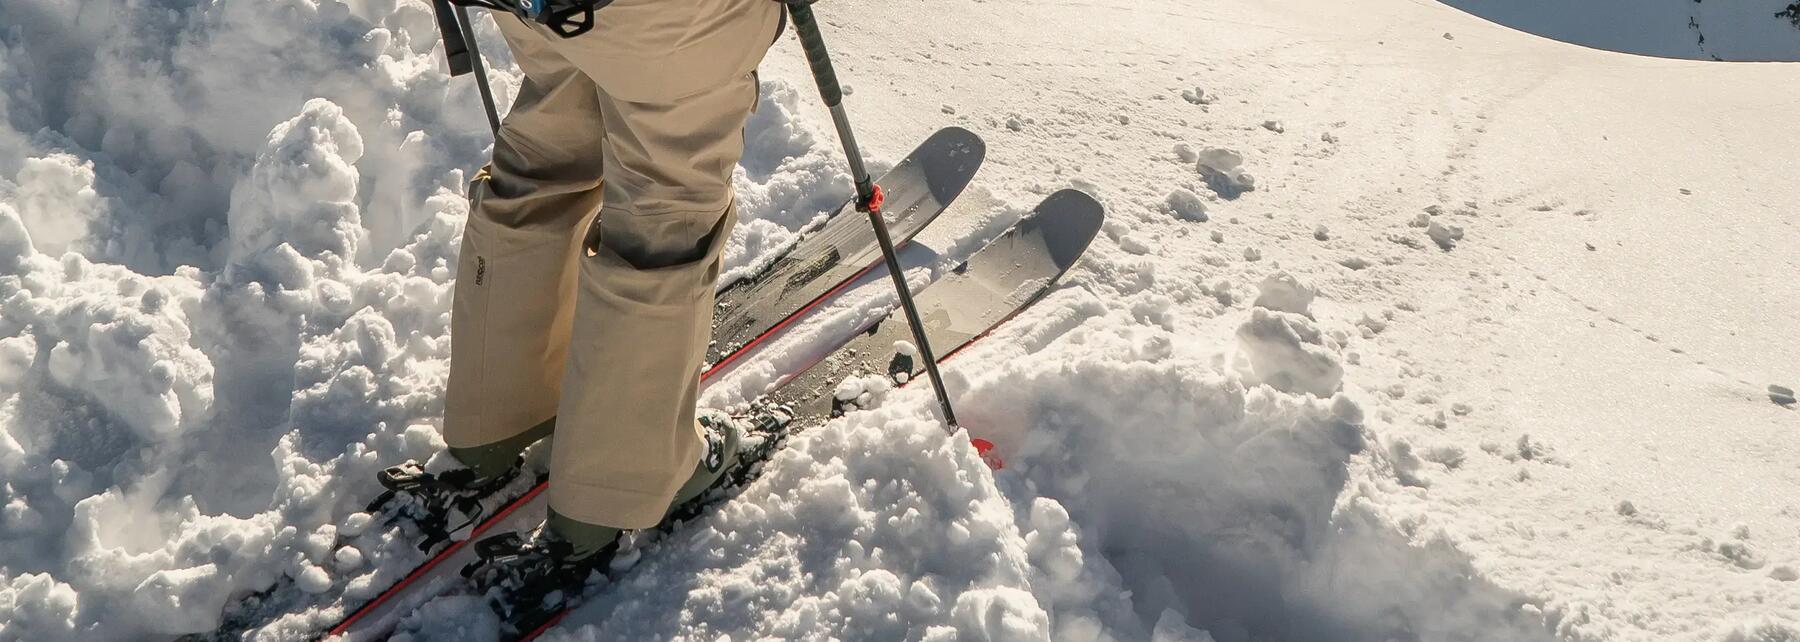 Je ski's slijpen en waxen | Decathlon.nl